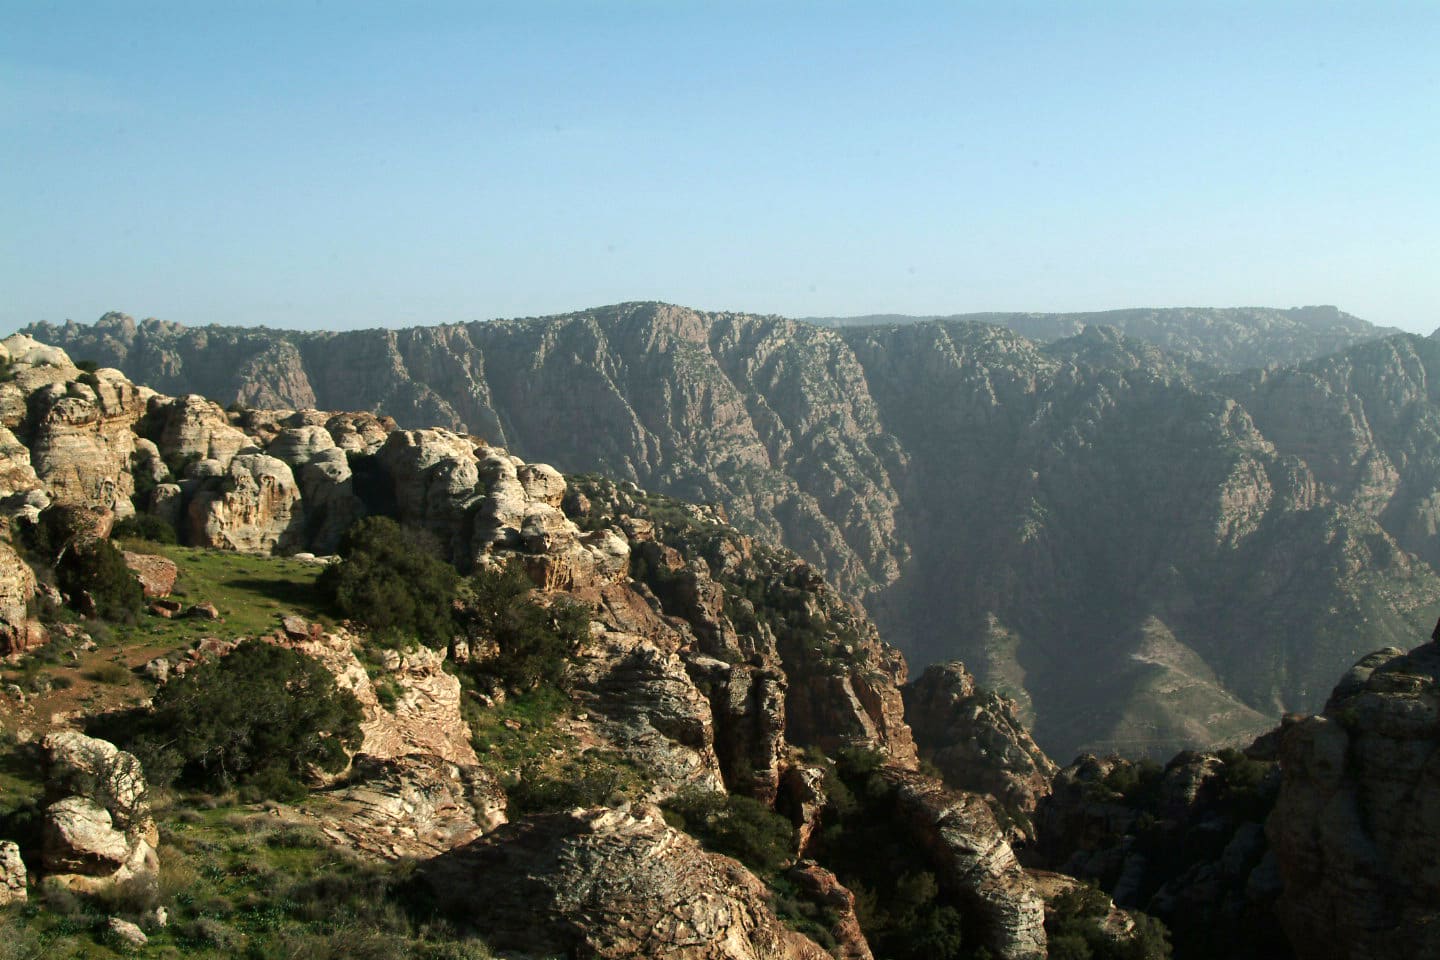 تجمع بين 4 أقاليم حيوية جغرافية في مكان واحد.. إليك روائع محمية ضانا للمحيط الحيوي بالأردن